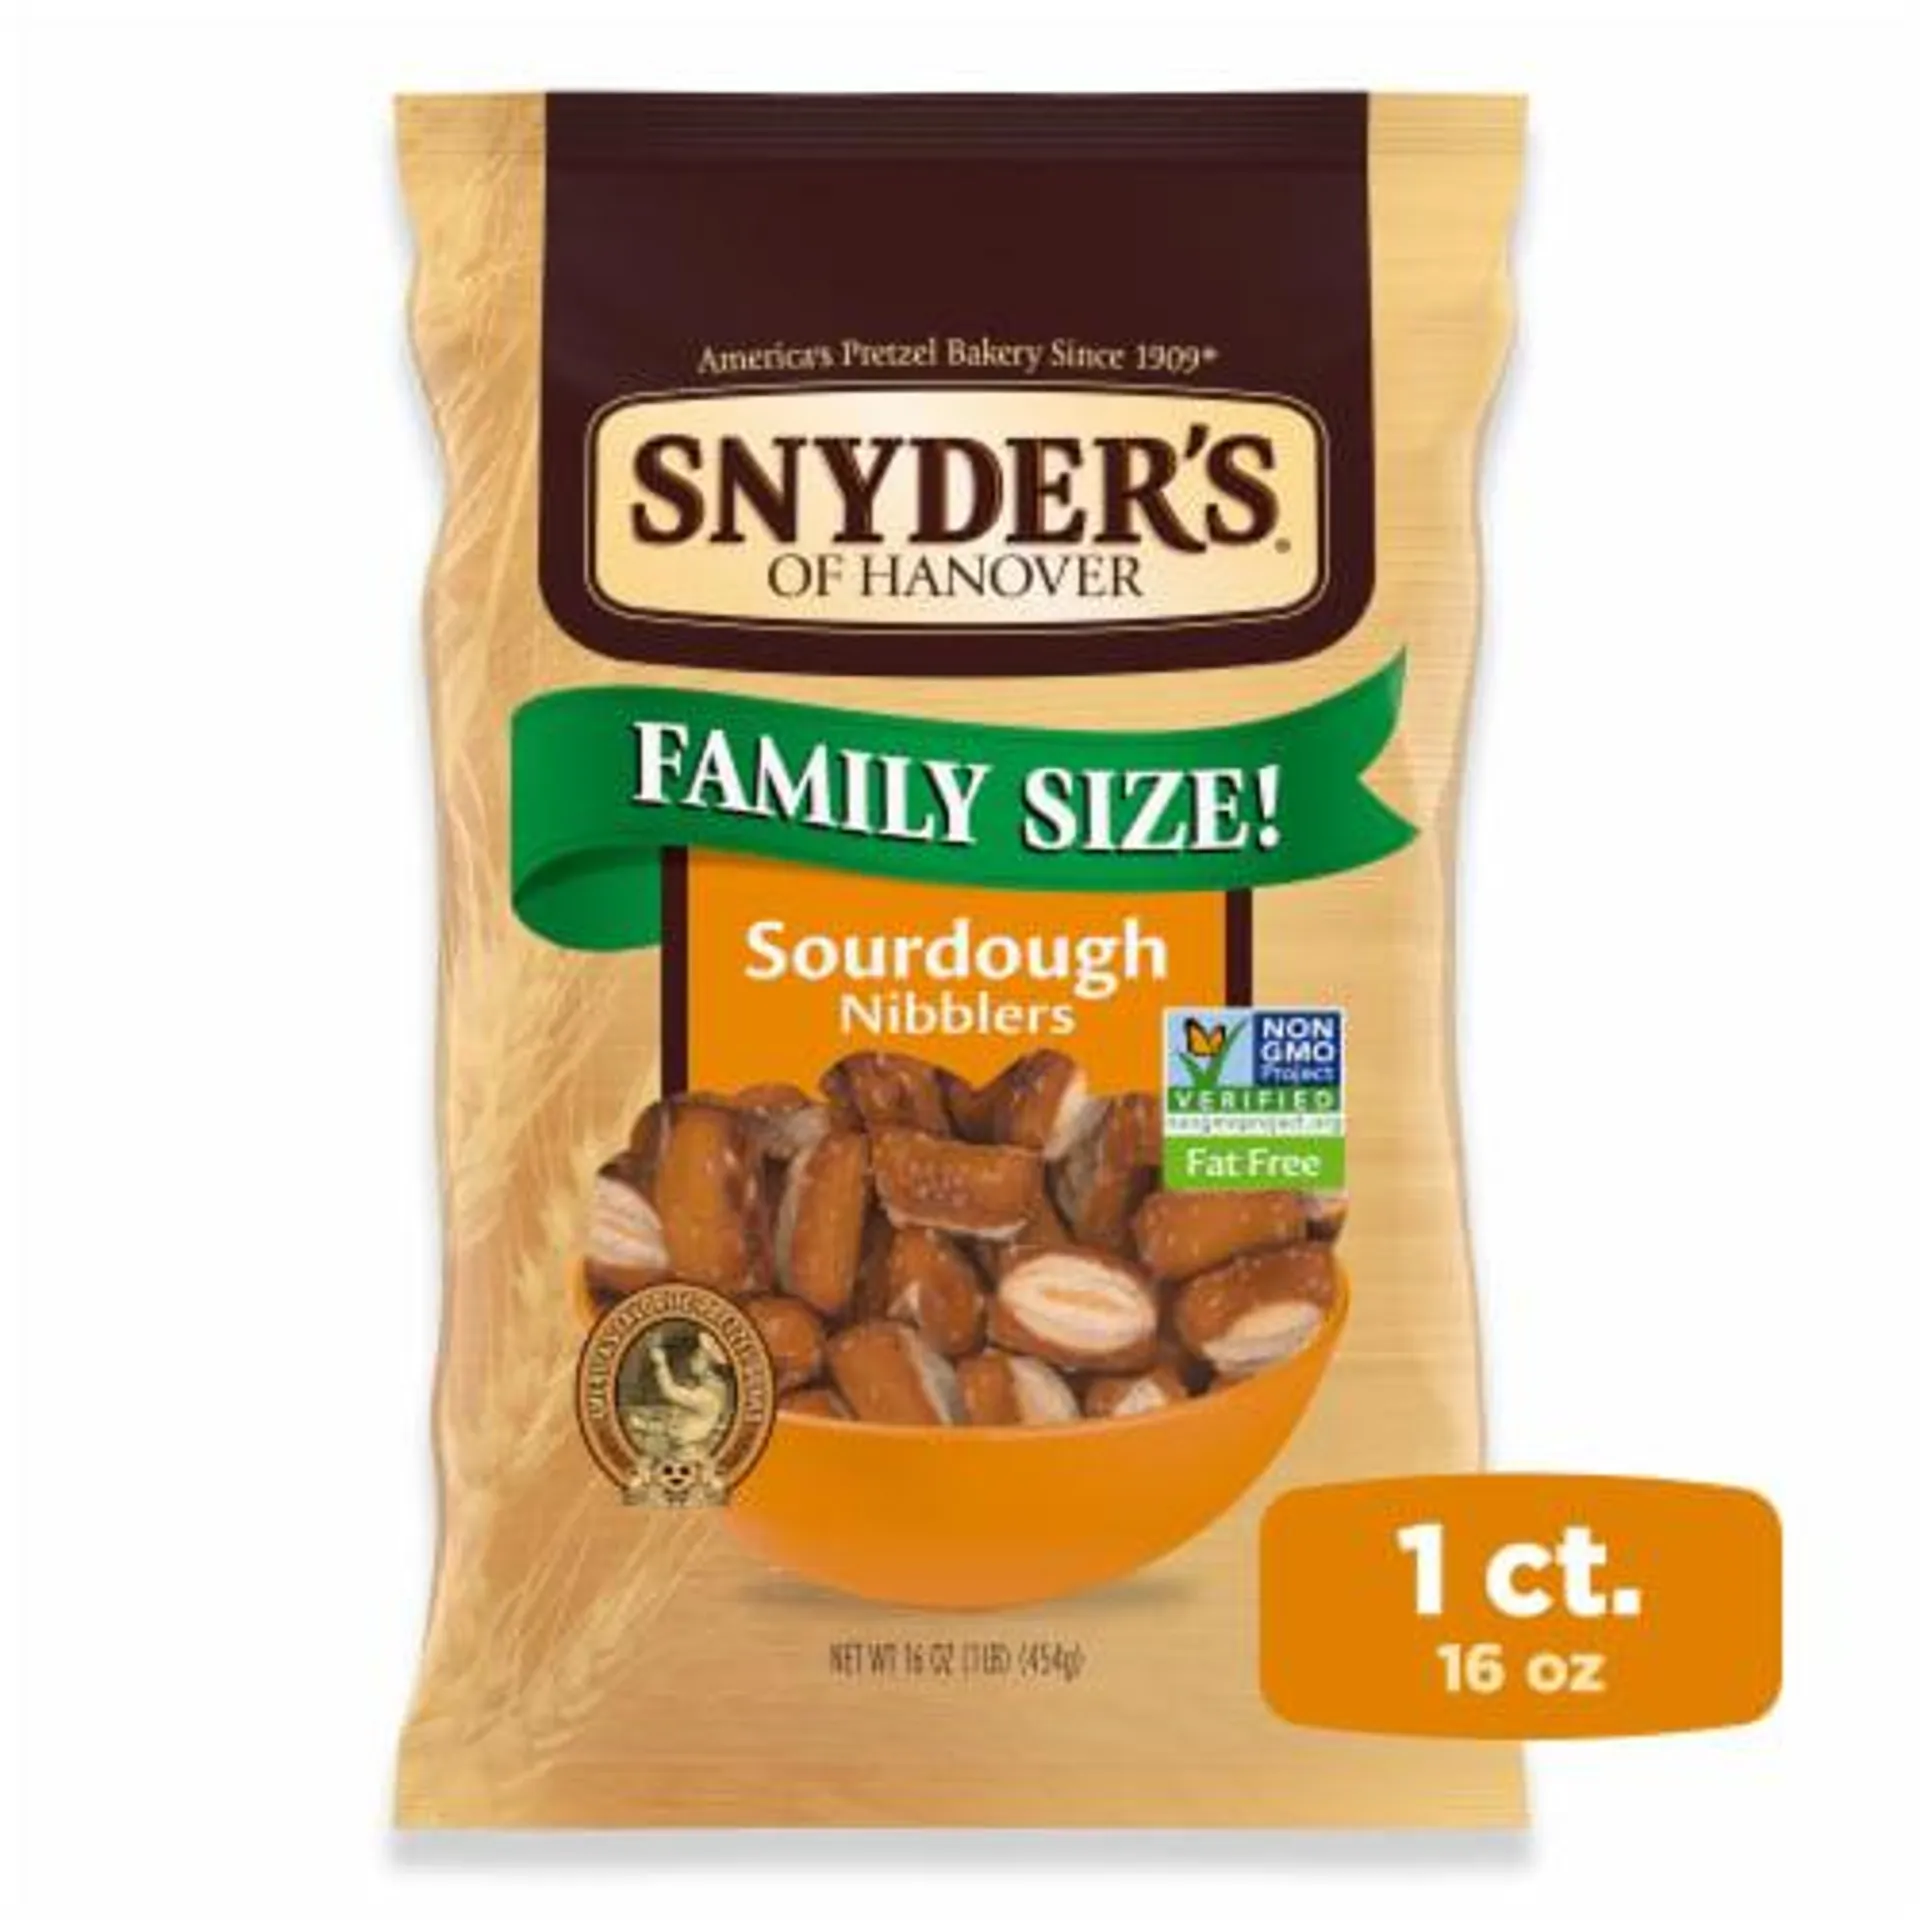 Snyder's® of Hanover Pretzels Sourdough Nibblers